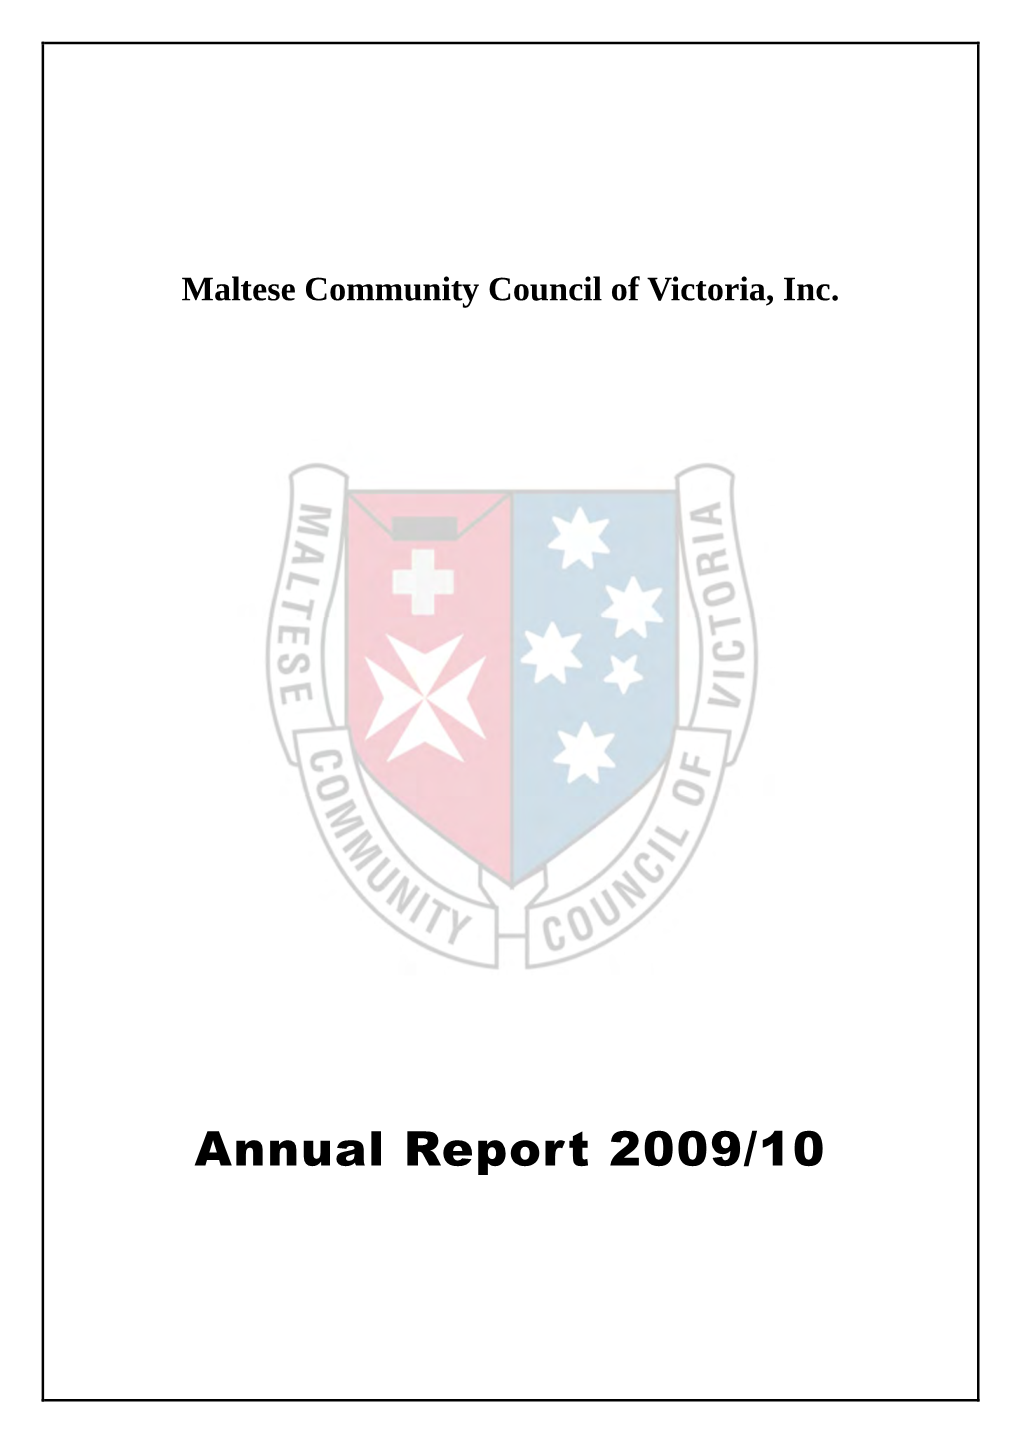 Annual Report 2009/10 MCCV Annual Report 2009/10